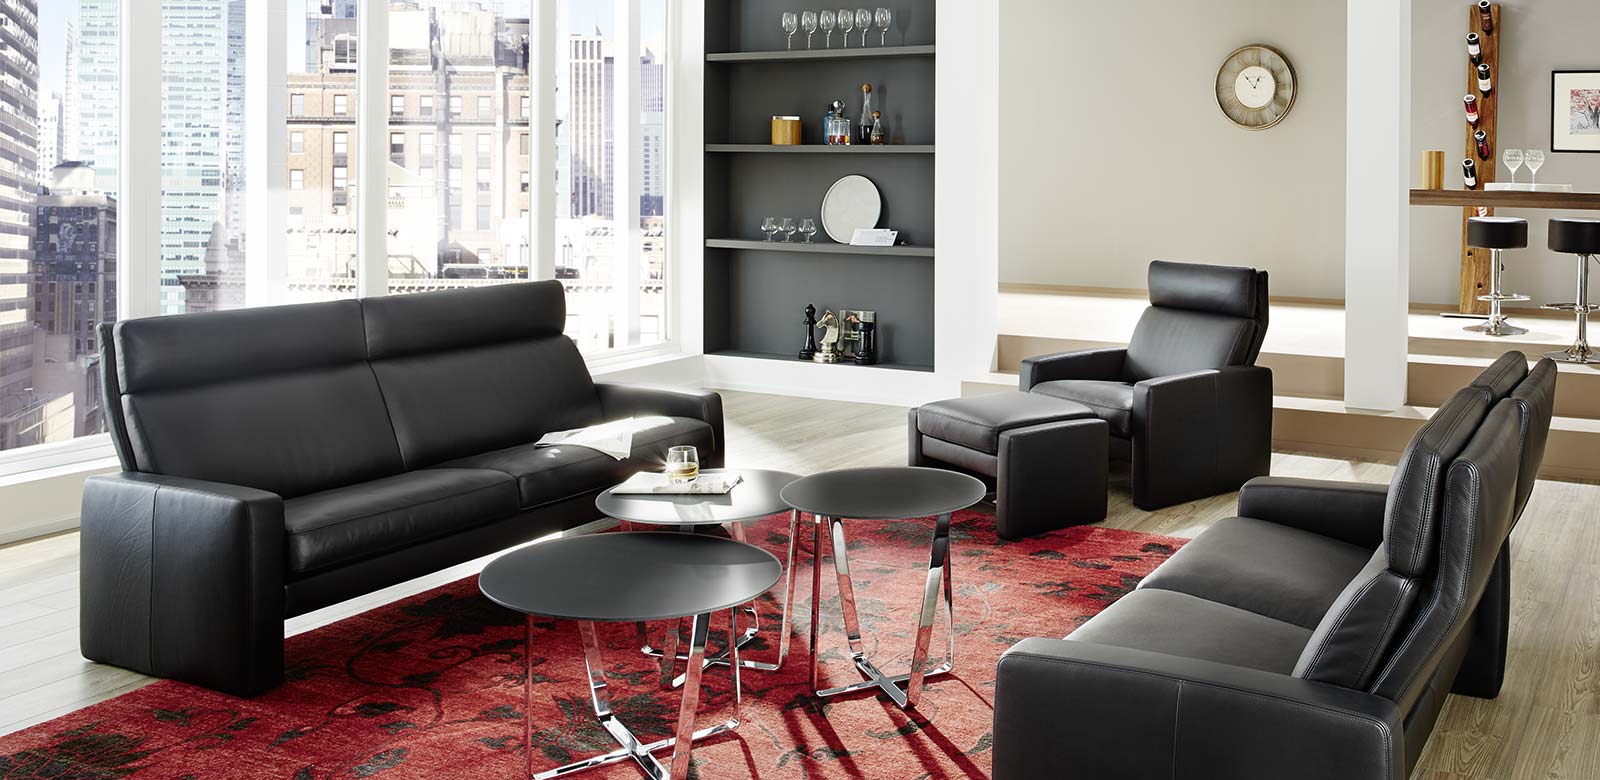 Arosa Couch met fauteuil en hocker in zwart leer, zwarte ronde bijzettafeltjes en rode loper.